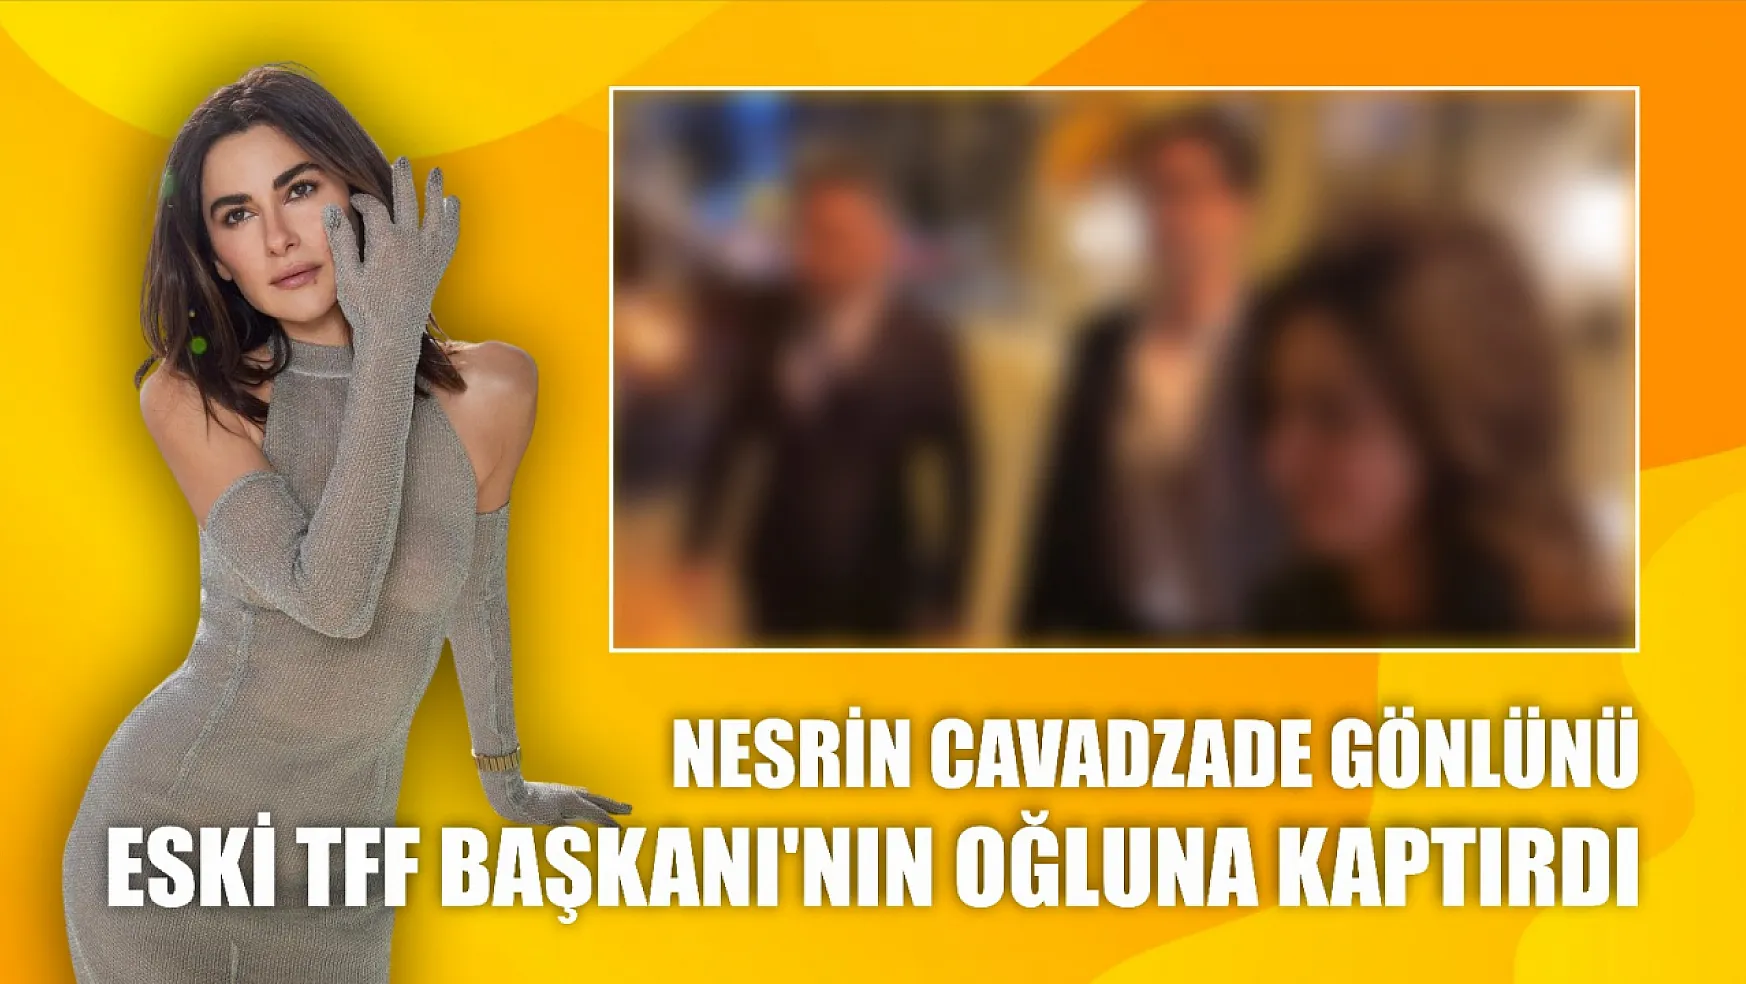 Nesrin Cavadzade gönlünü eski TFF Başkanı'nın oğluna kaptırdı